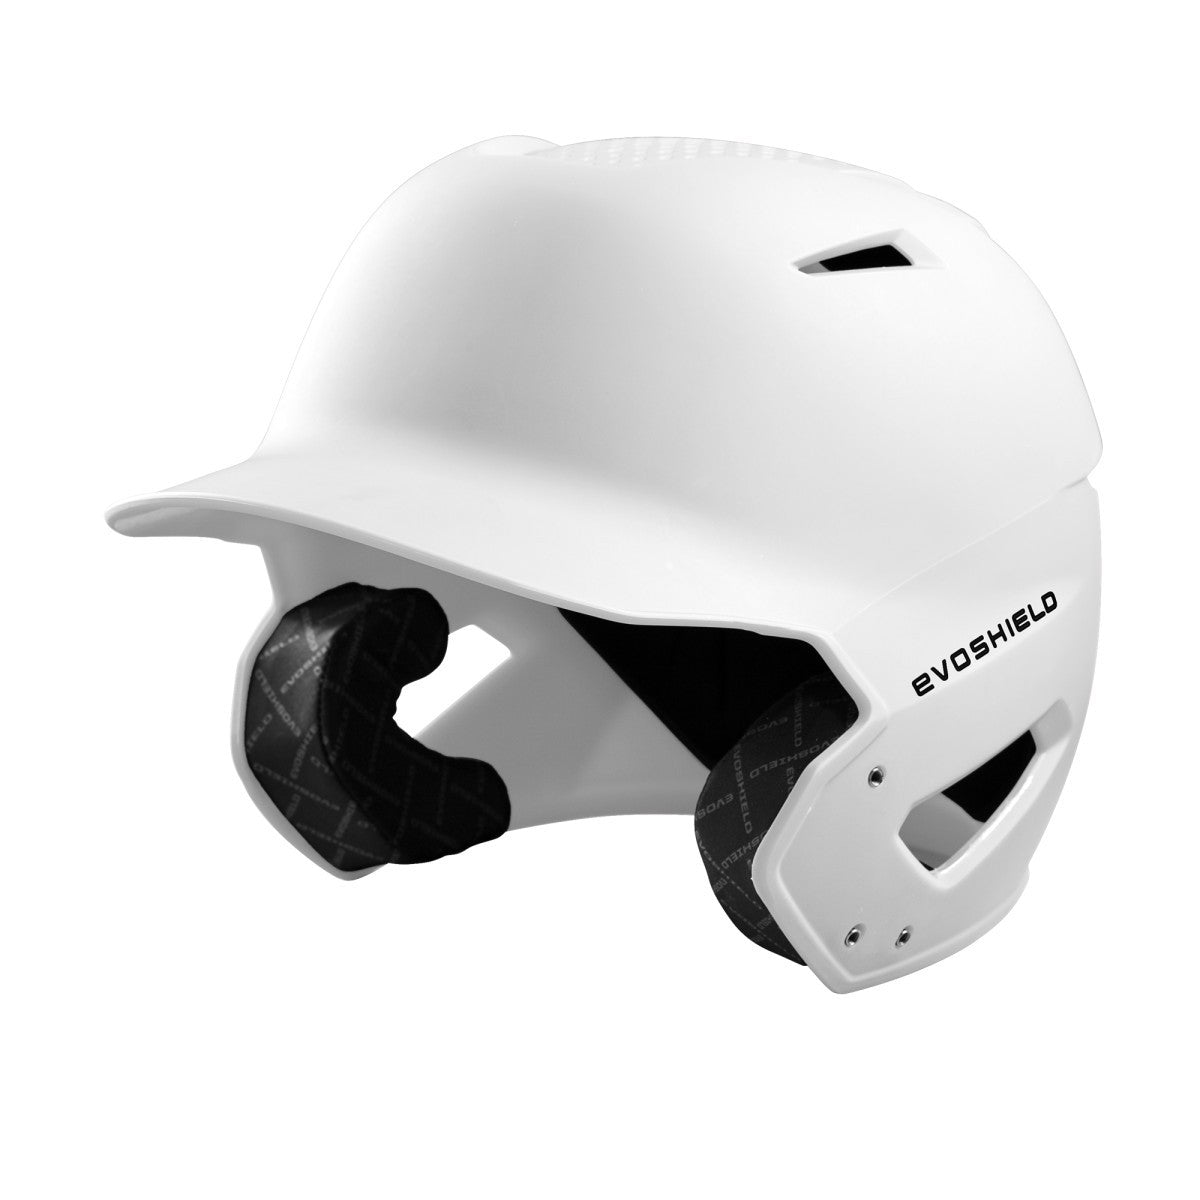 EvoShield XVT Batting Helmet - White Matte Finish (WTV7115WH)